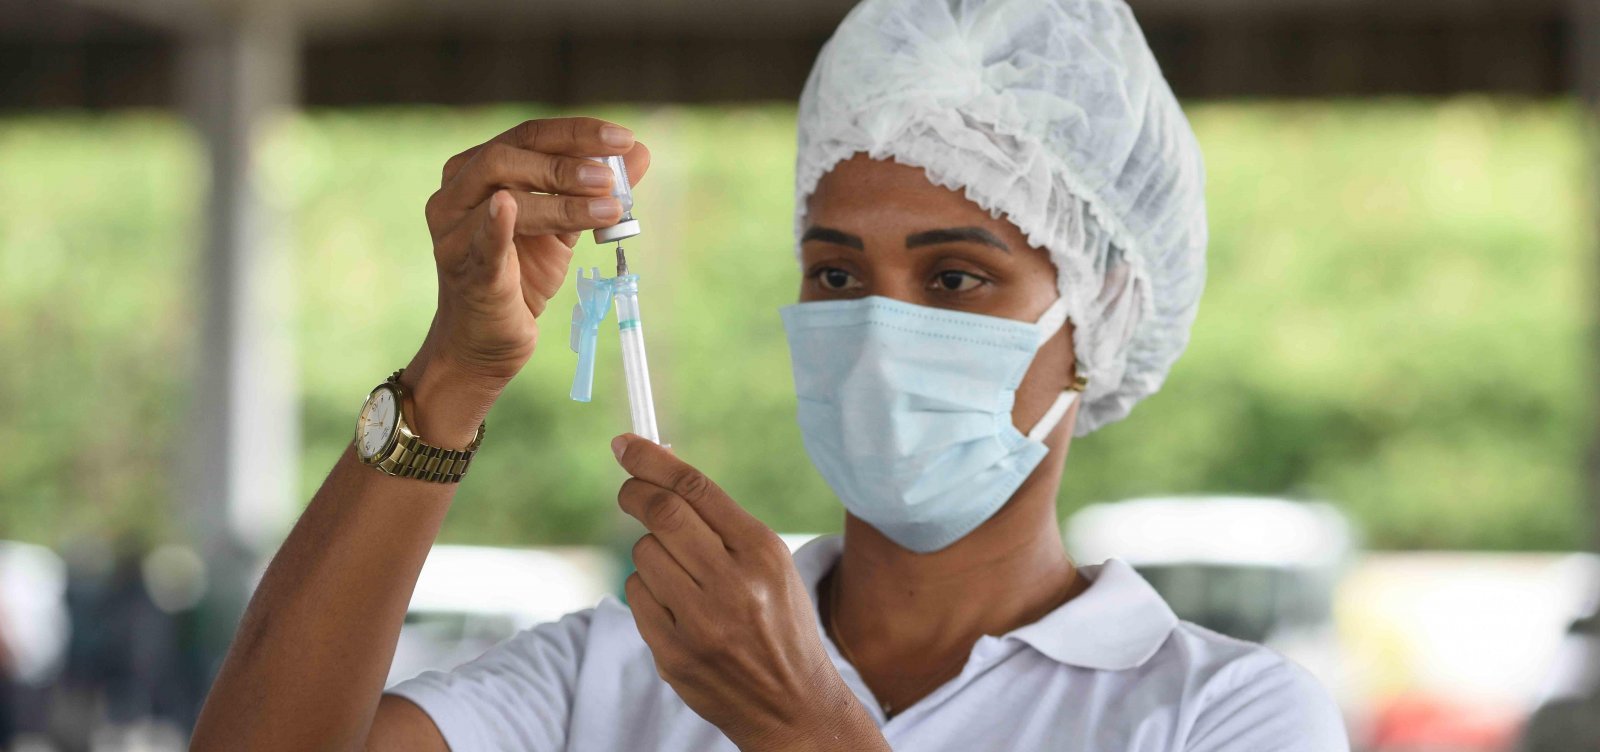 Brasil chega a 100 milhões de pessoas completamente imunizadas contra Covid